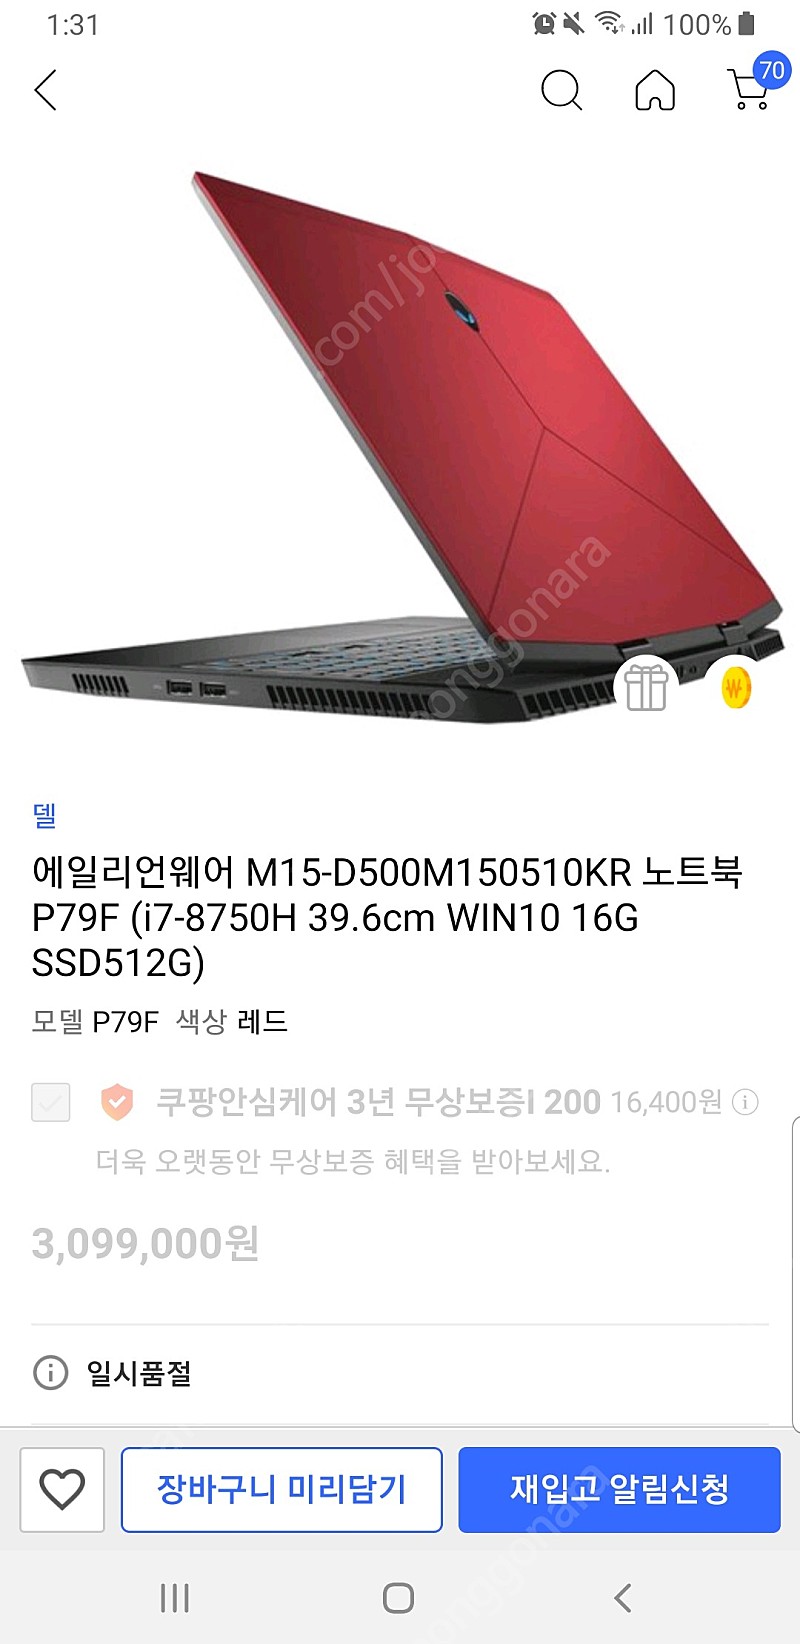 델(Dell) 게이밍 노트북 팔아요(에일리언웨어 M15-D500M)